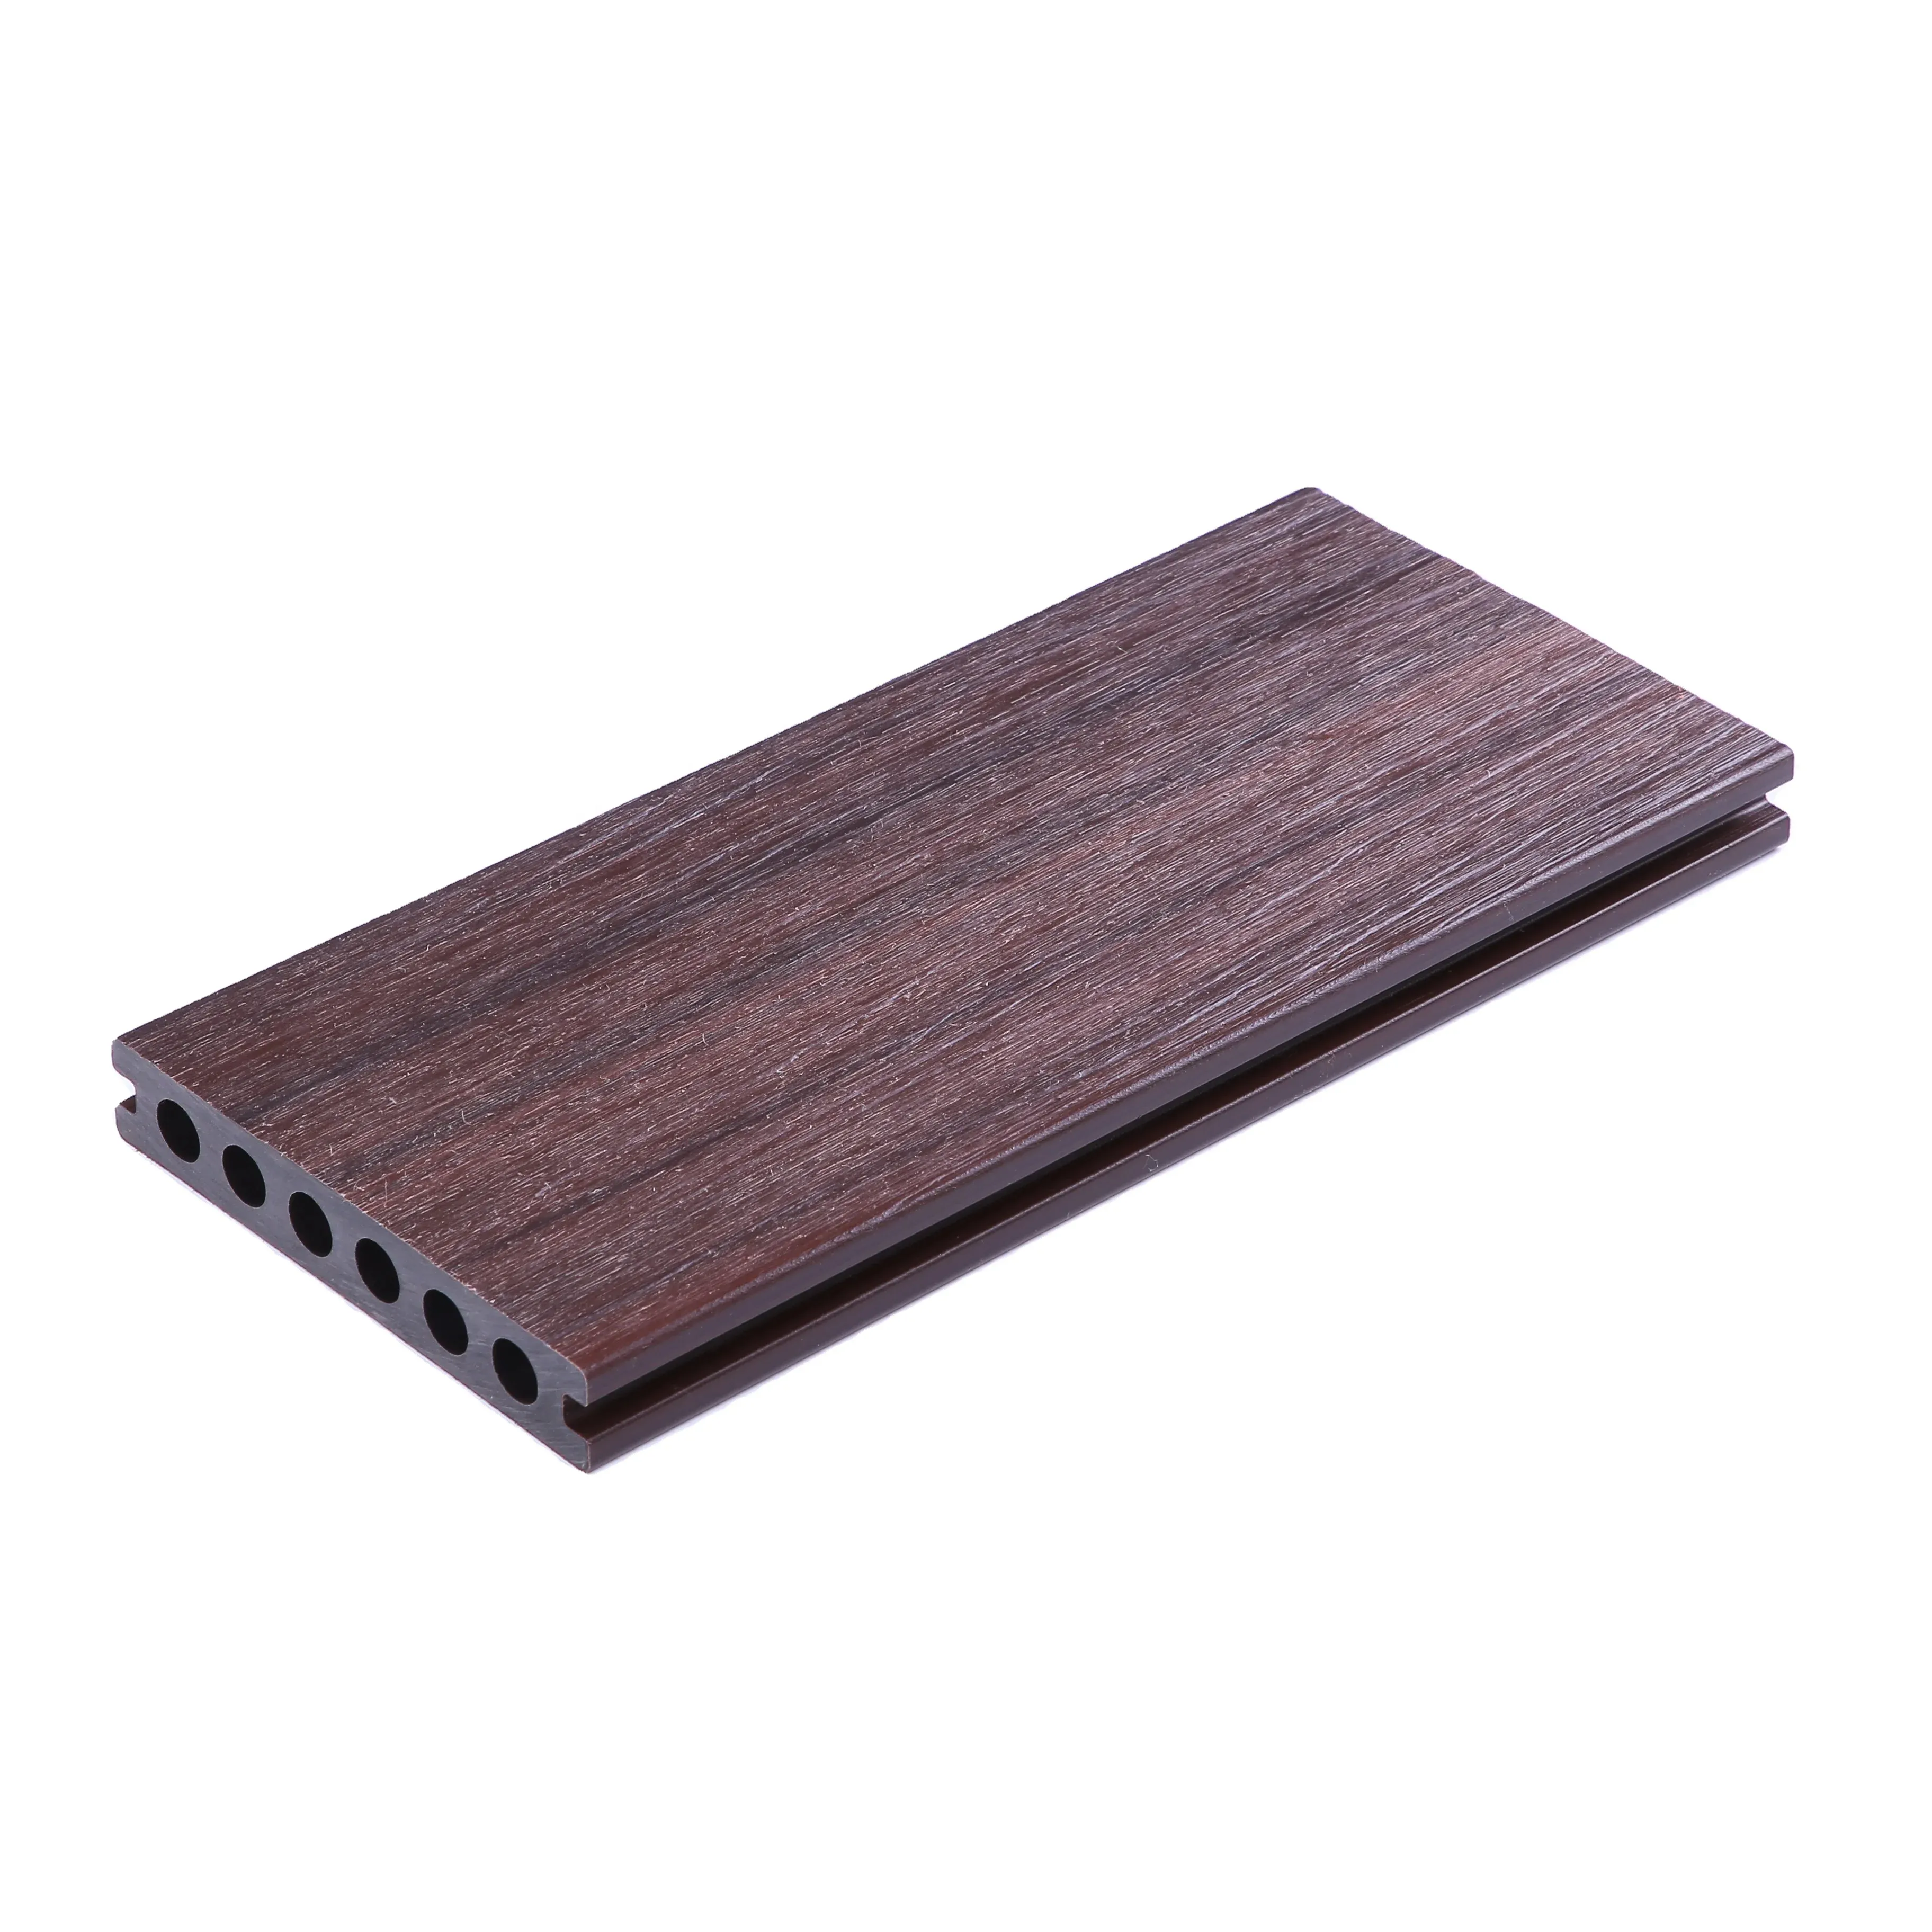 Platelage composite WPC de haute qualité Planche de terrasse en bois composite en plastique étanche pour l'extérieur